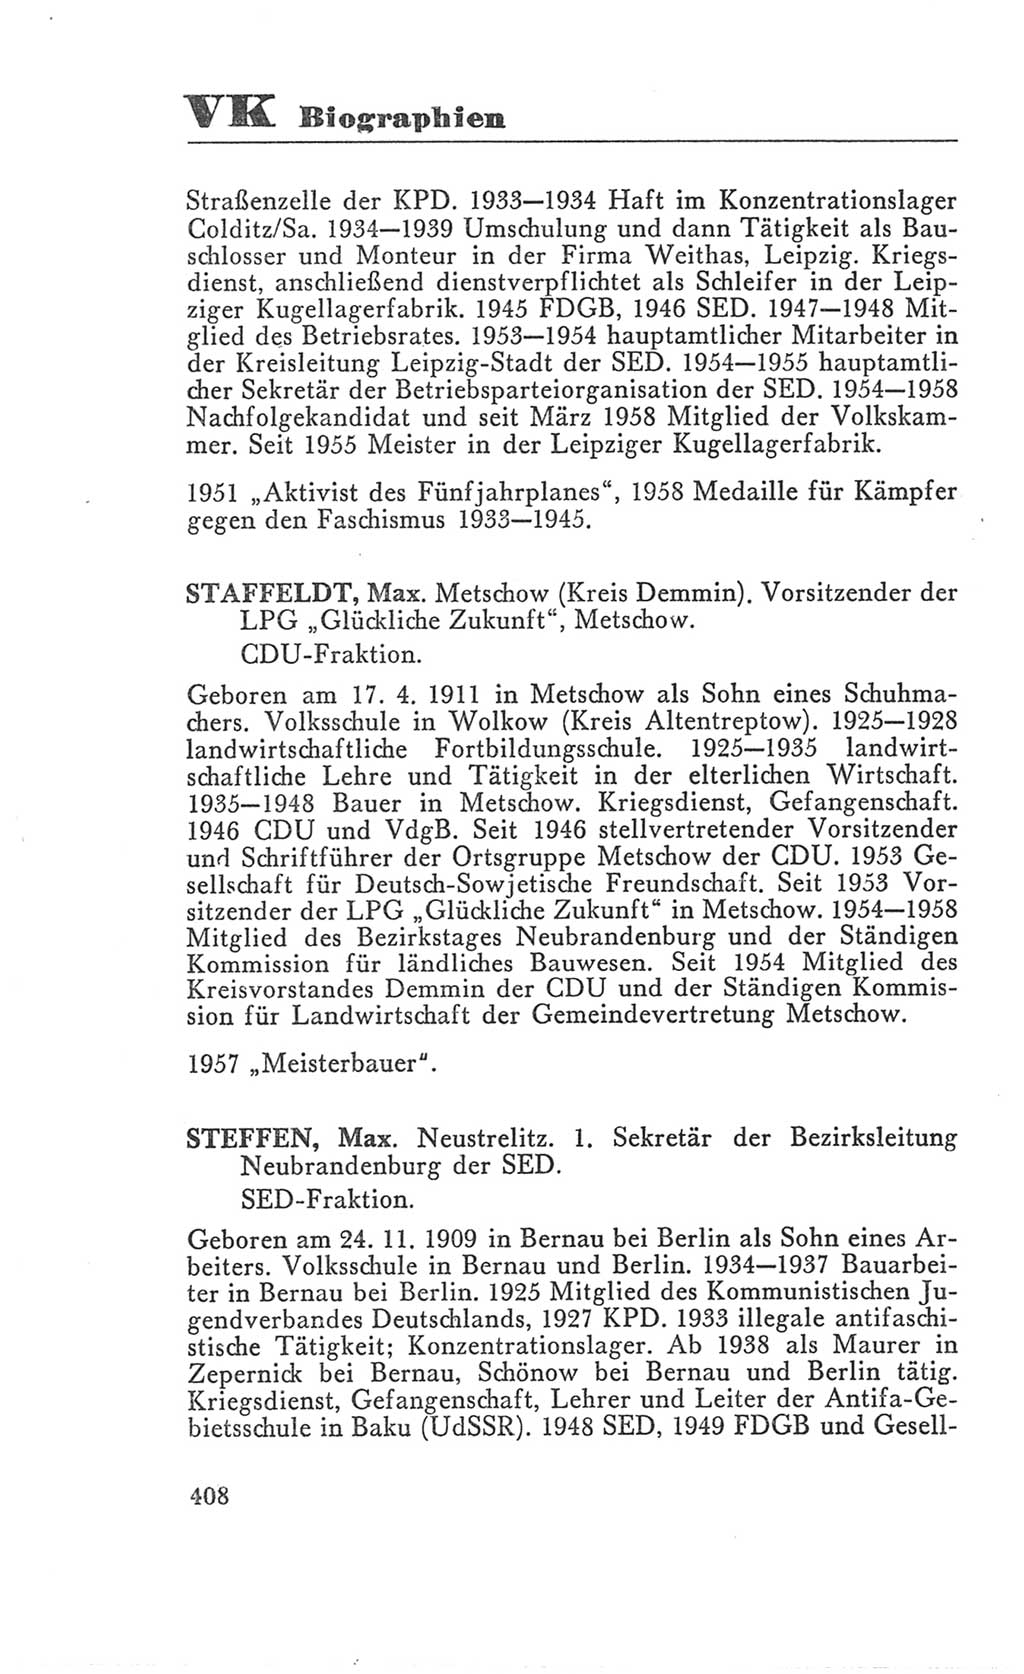 Handbuch der Volkskammer (VK) der Deutschen Demokratischen Republik (DDR), 3. Wahlperiode 1958-1963, Seite 408 (Hdb. VK. DDR 3. WP. 1958-1963, S. 408)